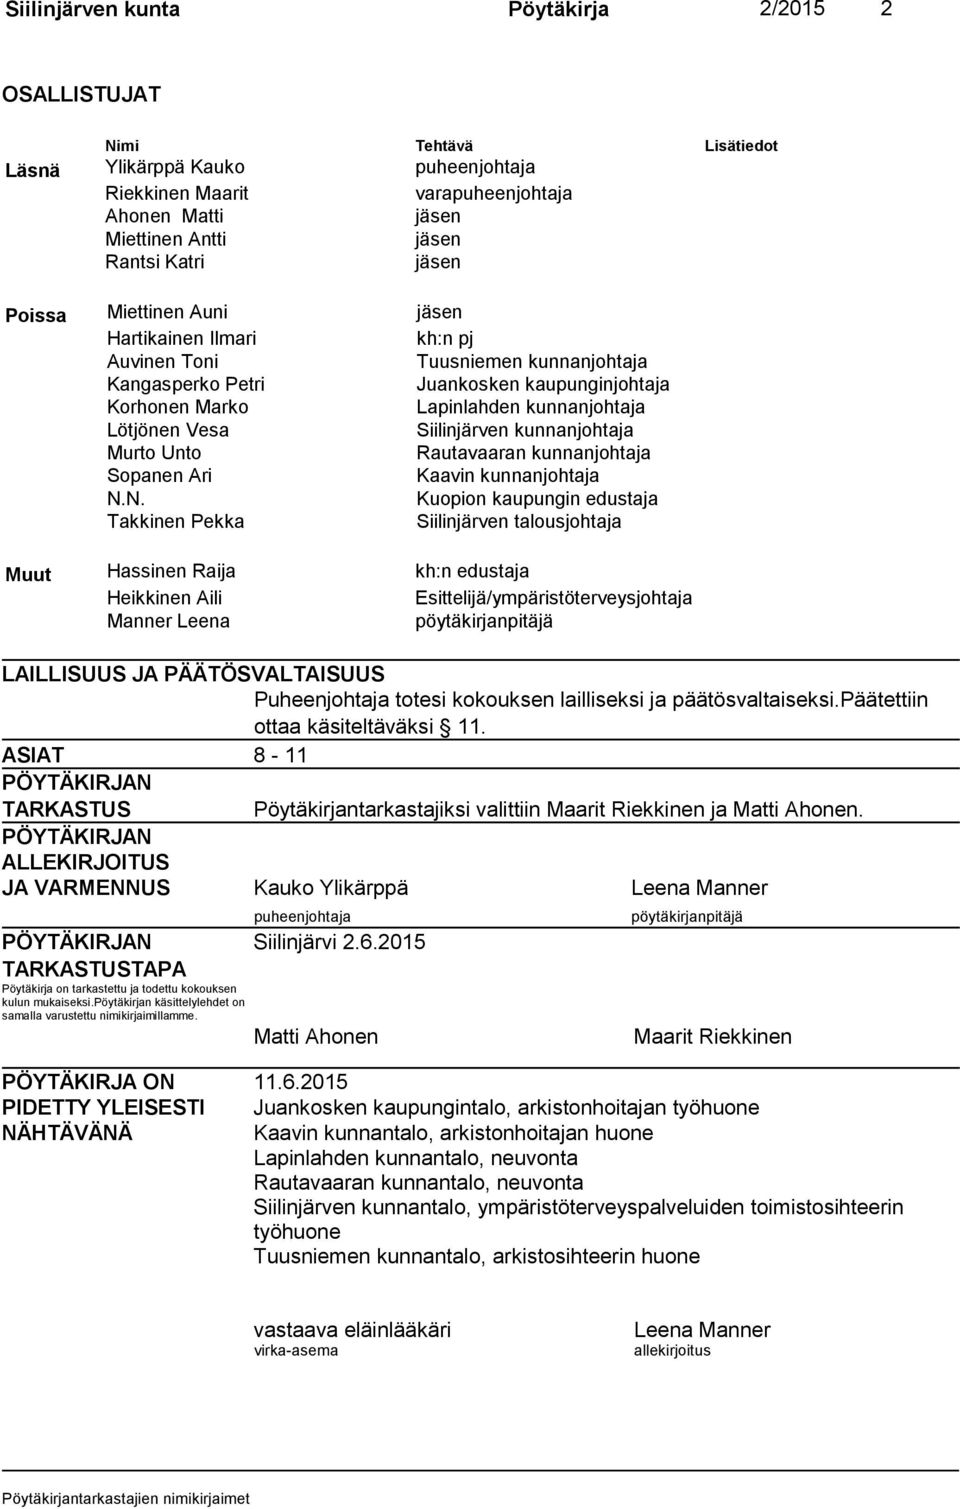 Lötjönen Vesa Siilinjärven kunnanjohtaja Murto Unto Rautavaaran kunnanjohtaja Sopanen Ari Kaavin kunnanjohtaja N.